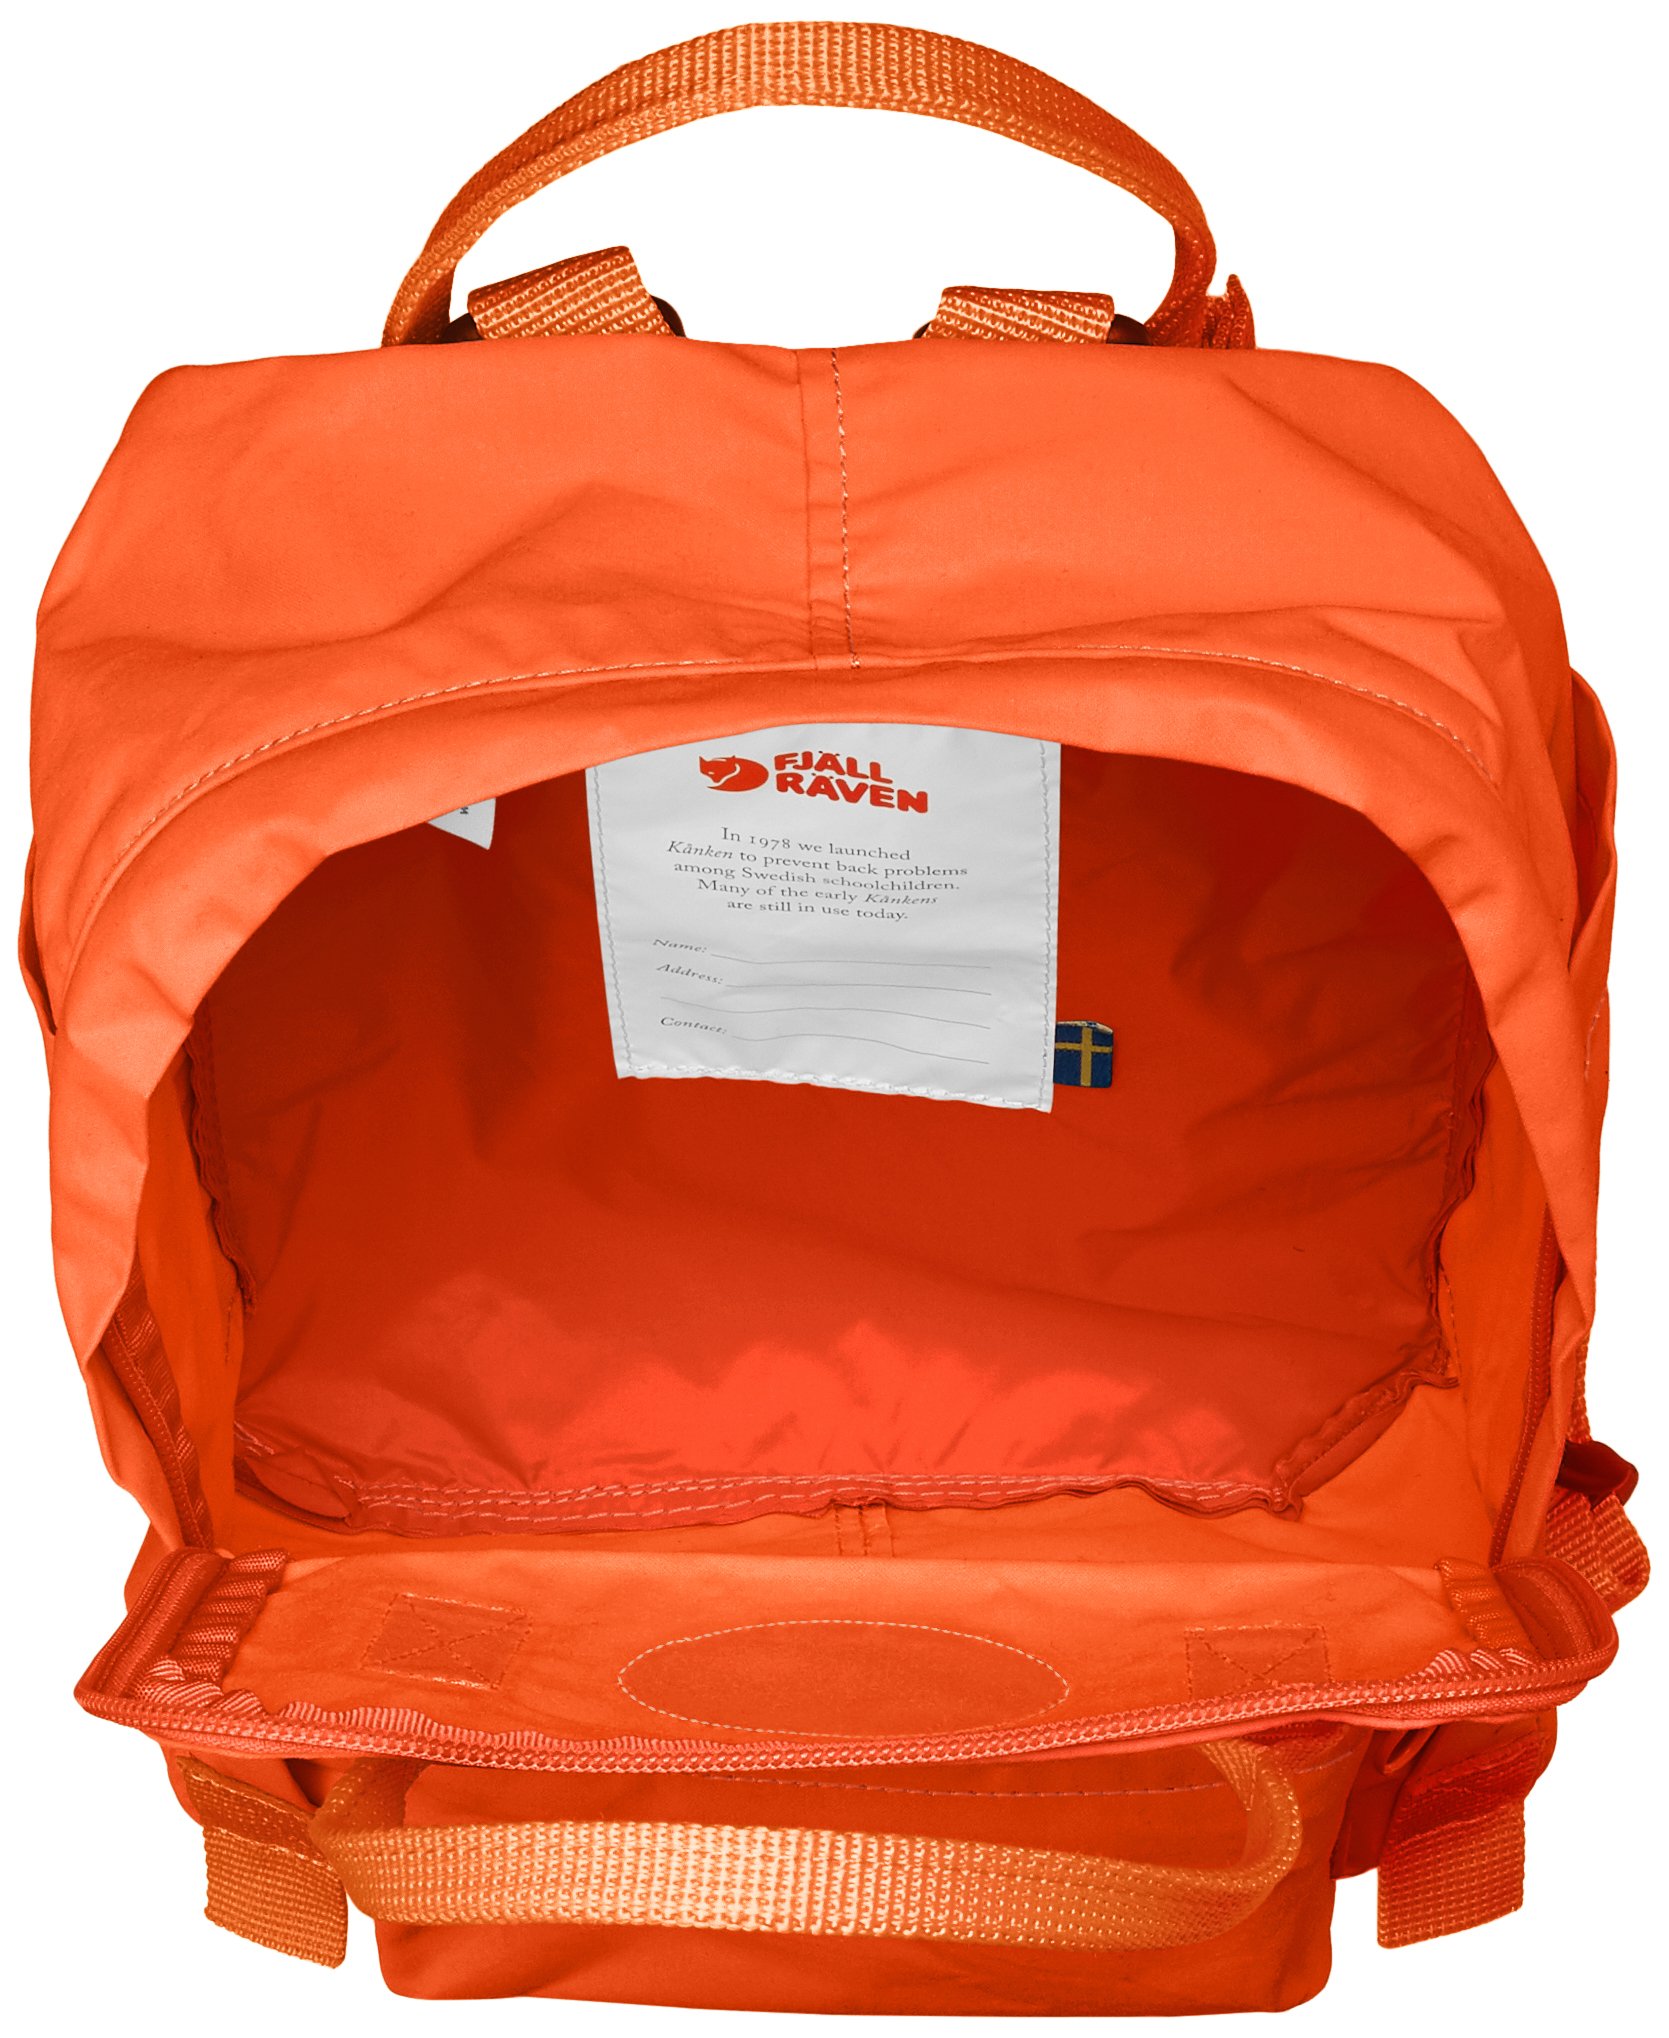 FJALL RAVEN(フェールラーベン) Fährlaven Kanken Mini Women's Official Amazon Backpack, Burnt Orange